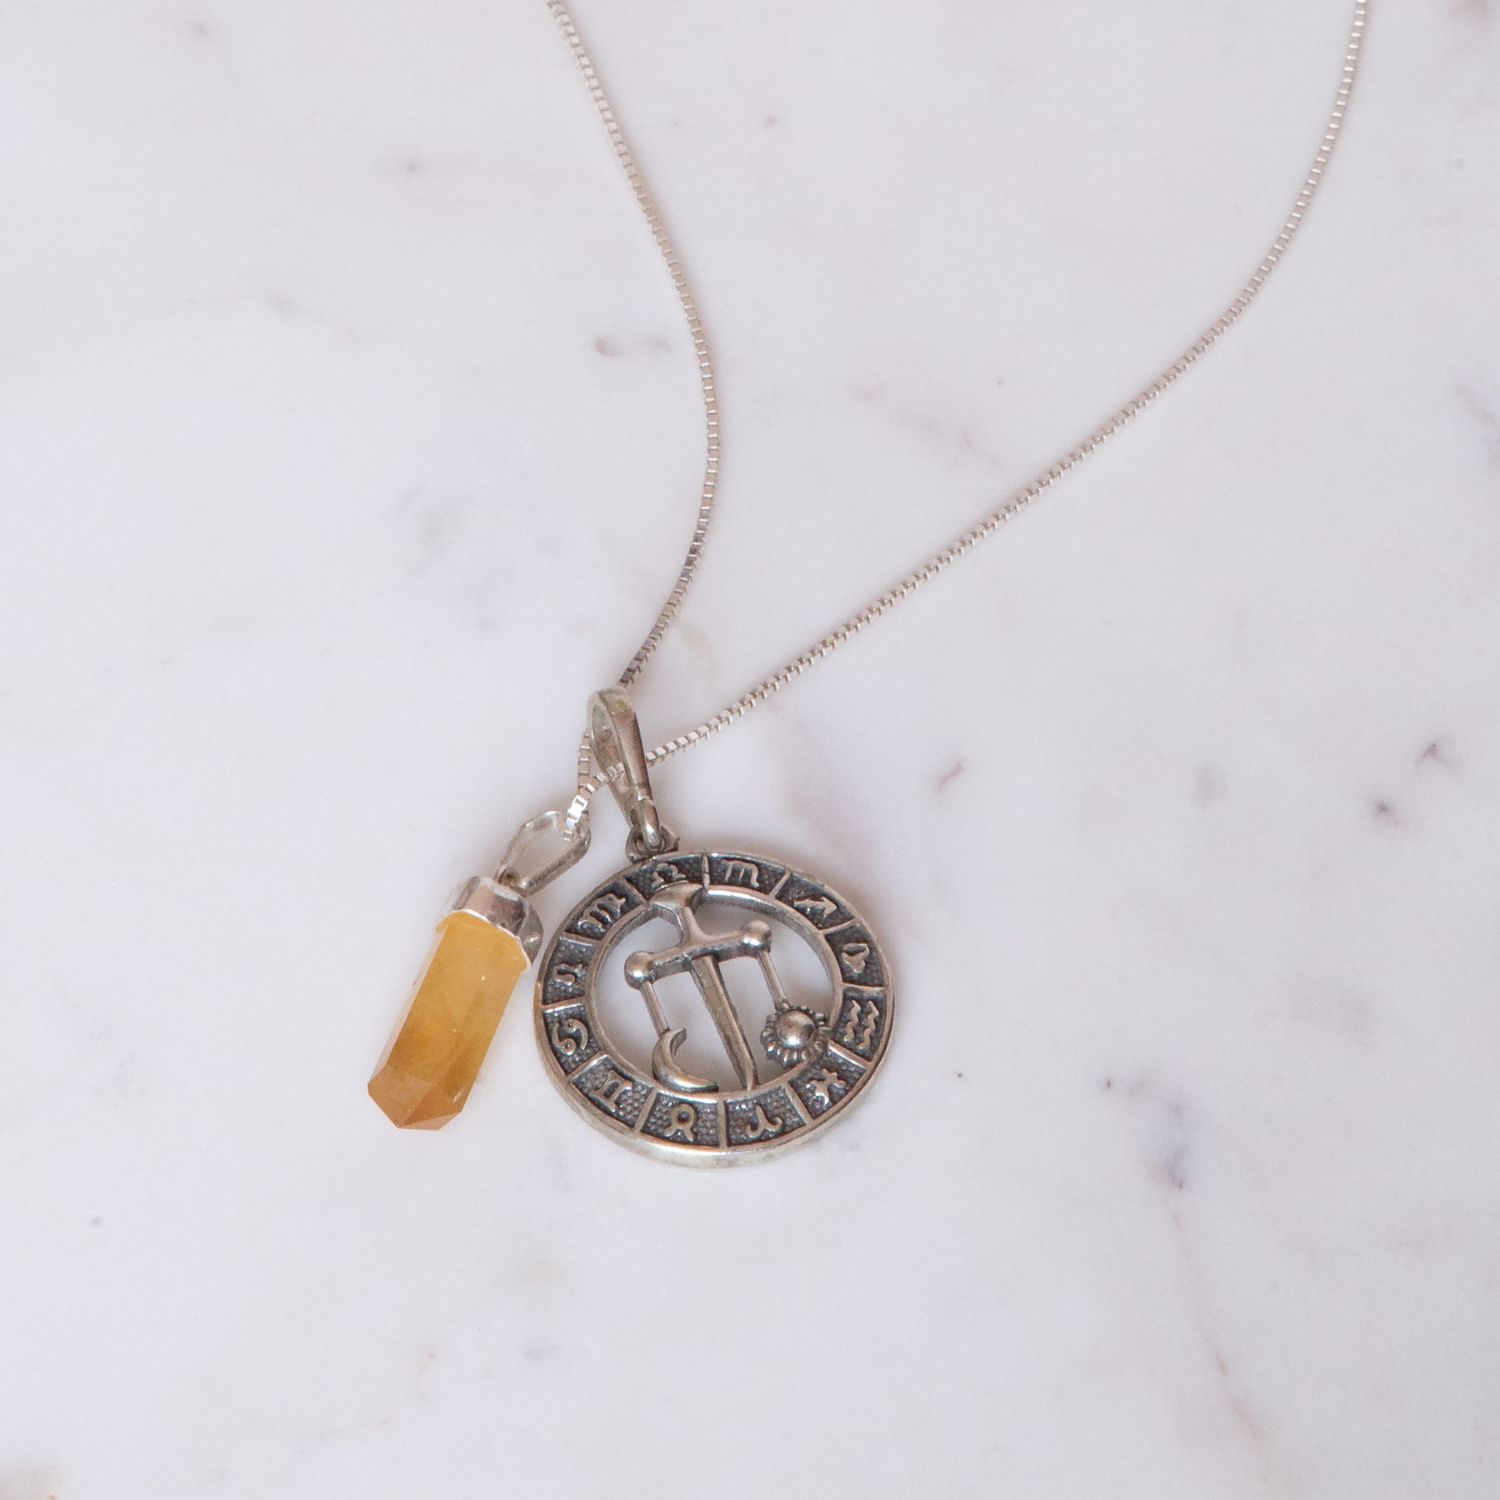 Pedra do signo de Libra: colar com pingente de citrino + medalhinha